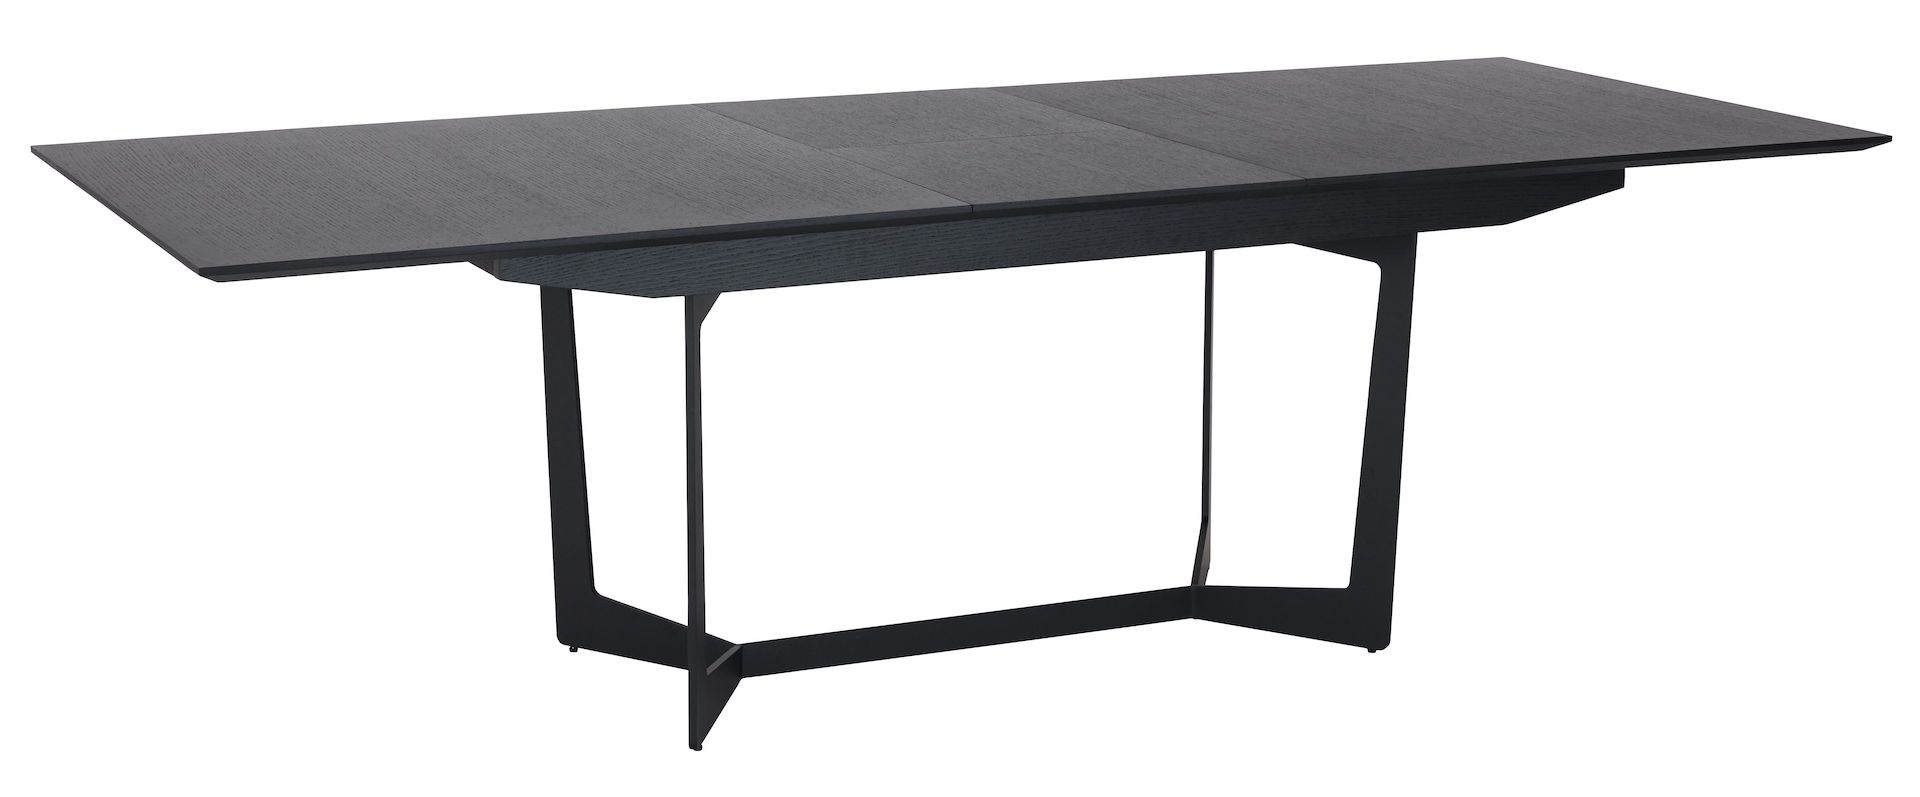 Rungsted spisebord 100 x 200 cm i sort egtræsfiner og med sortlakeret metalstel.